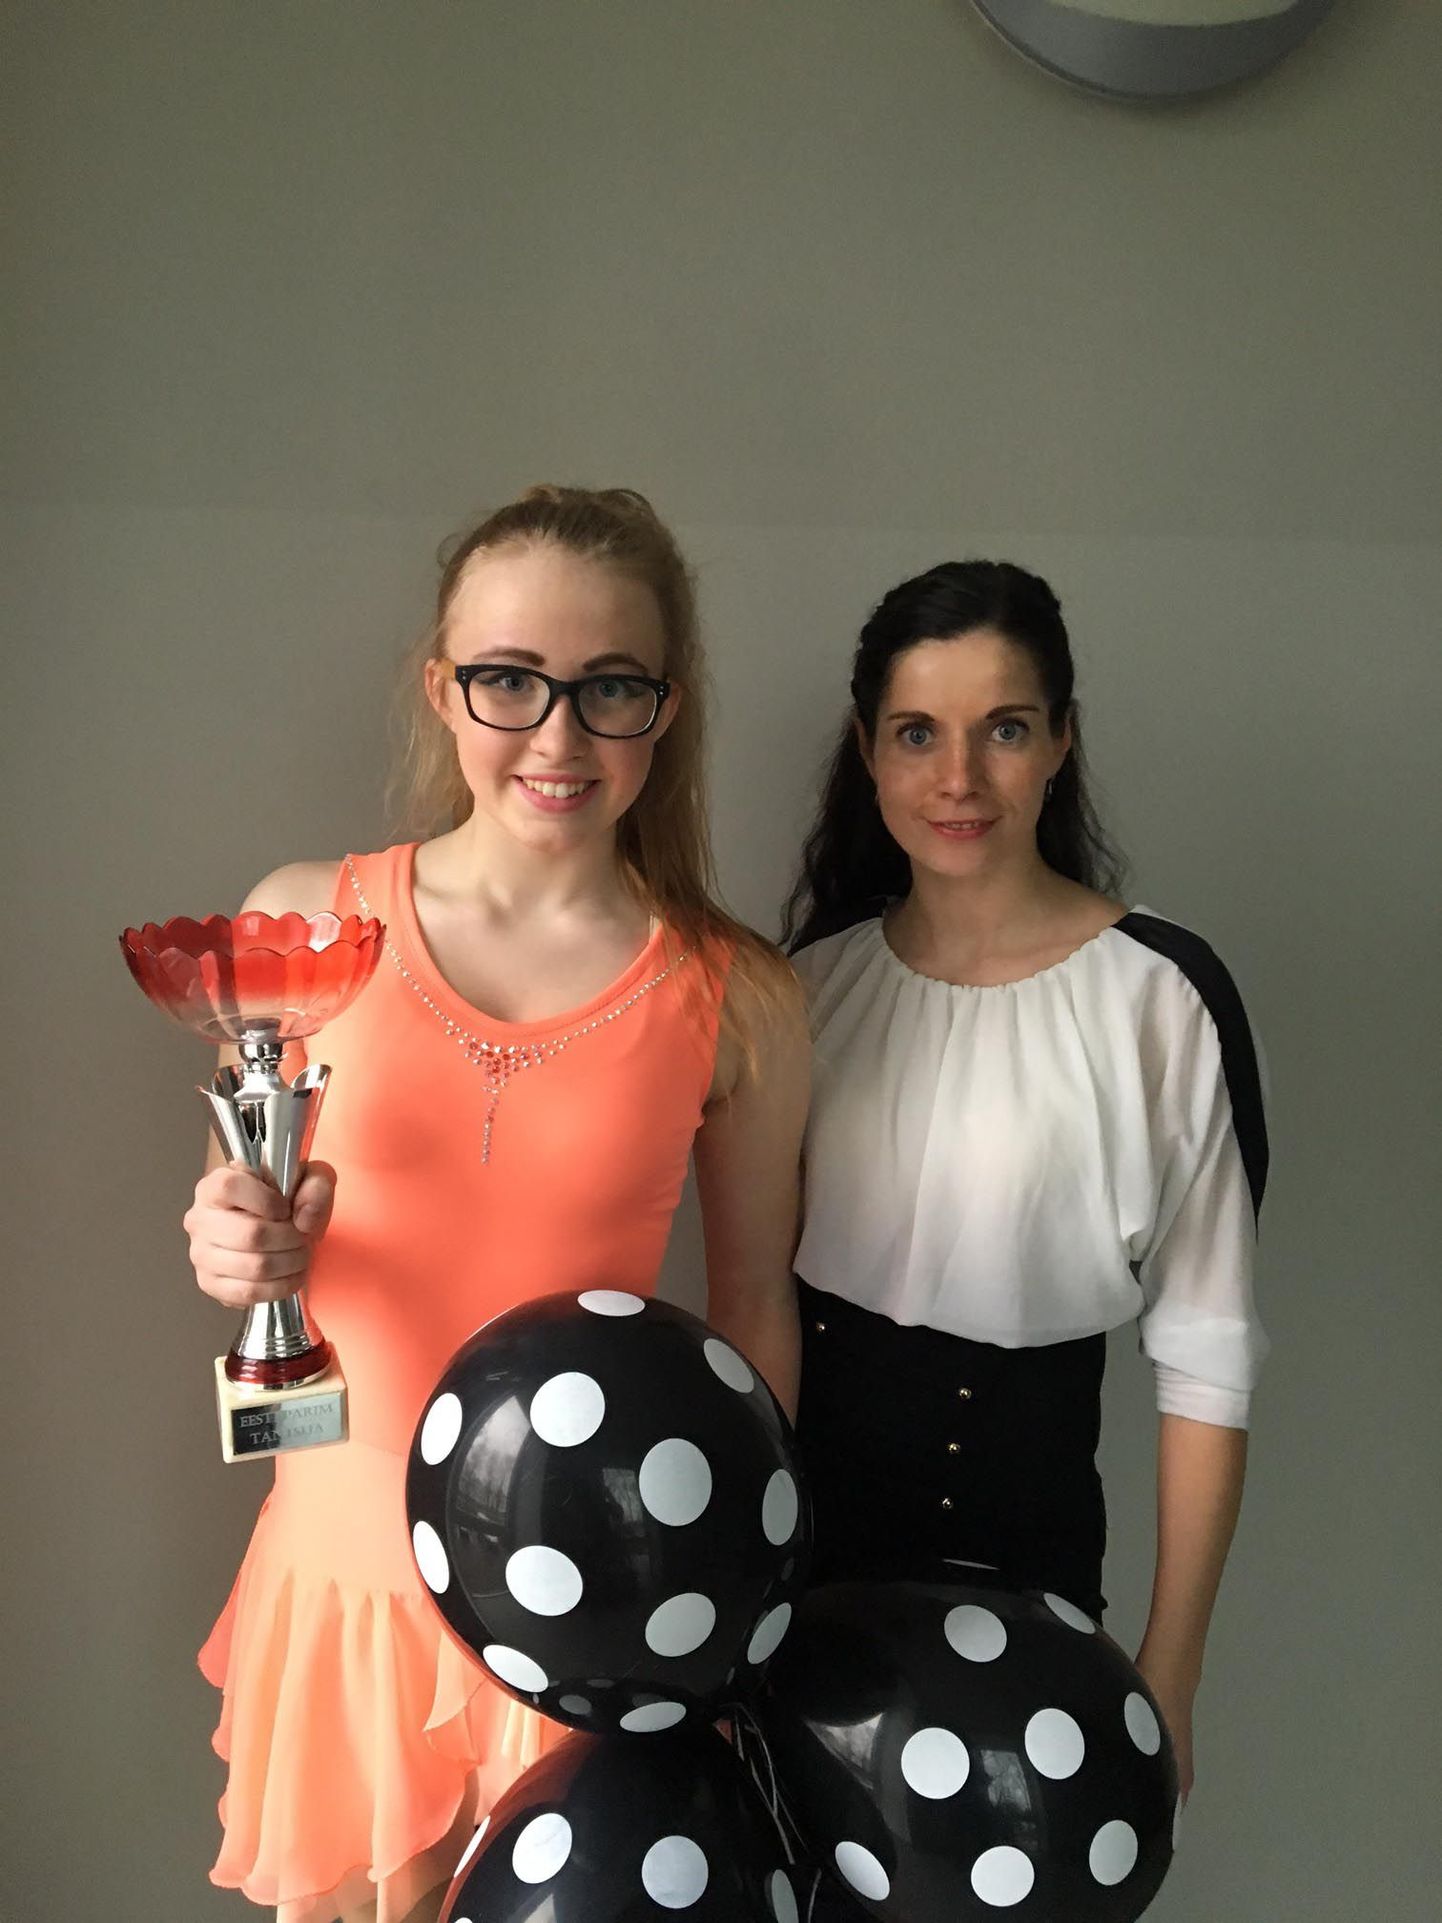 Eesti parim tantsija on Tõrva gümnaasiumi 7. klassi neiu Grete-Lisette Gulbis. Klubis Hop tantsiv tüdruk valiti rahvahääletuse põhjal pühapäeval saate «Tantsuhullus» võitjaks. Neiu juhendaja on Kerli Vessin.